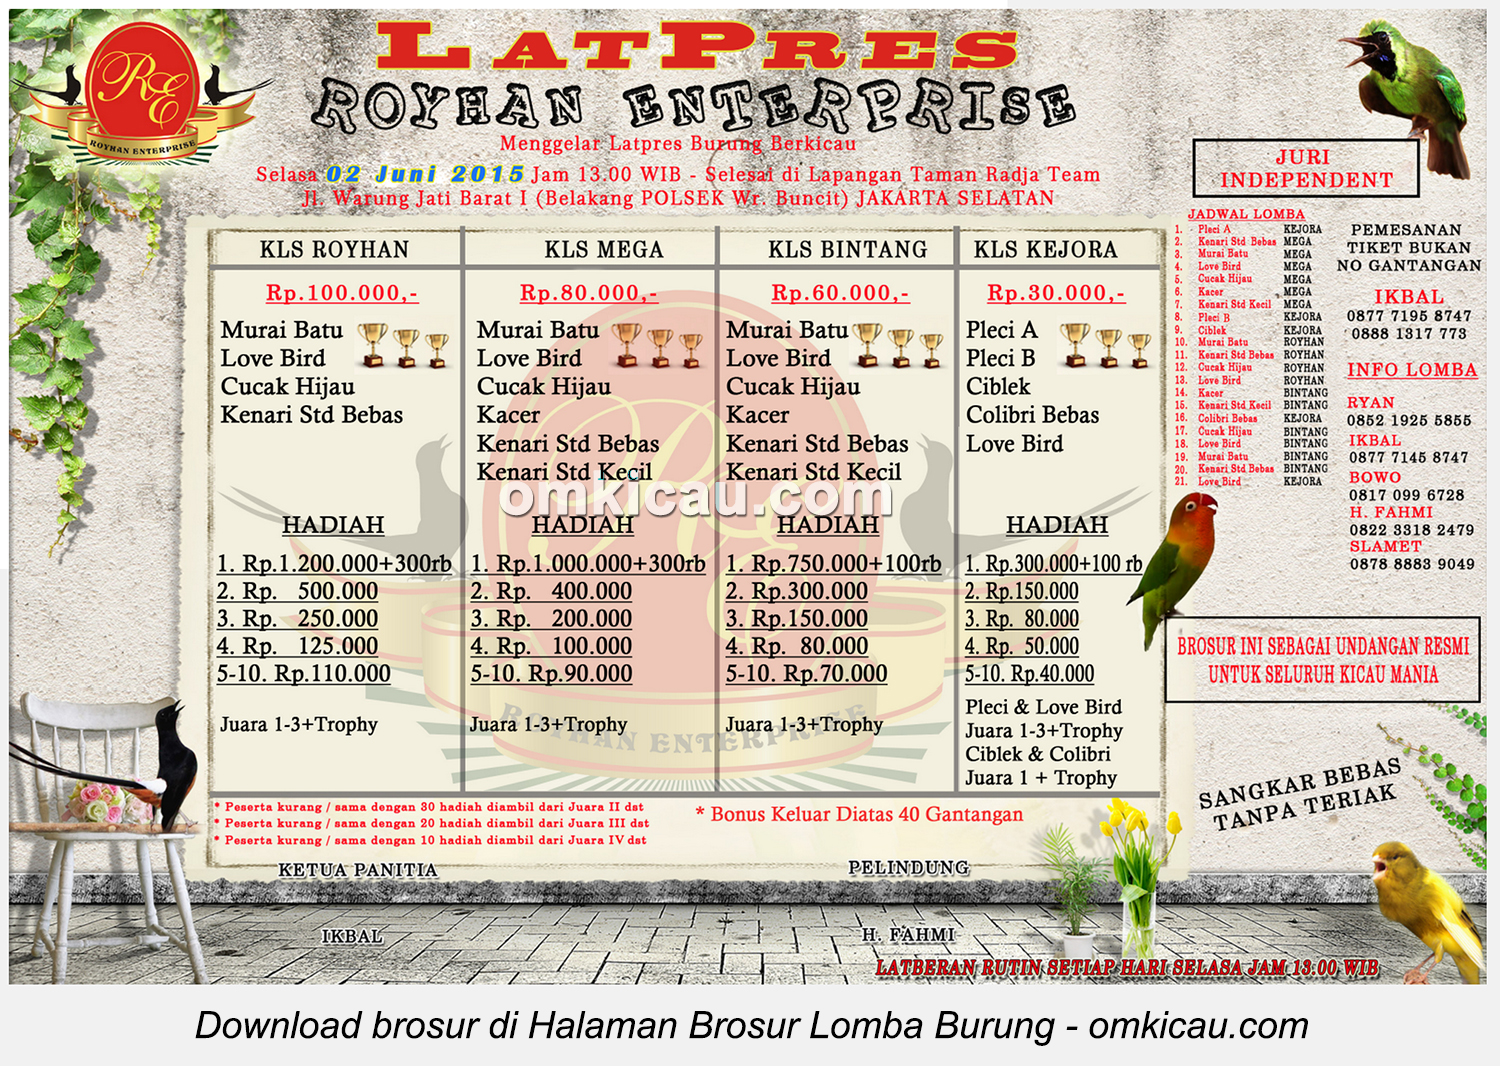 Brosur Latpres Burung Berkicau Royhan Enterprise, Jakarta Selatan, 2 Juni 2015